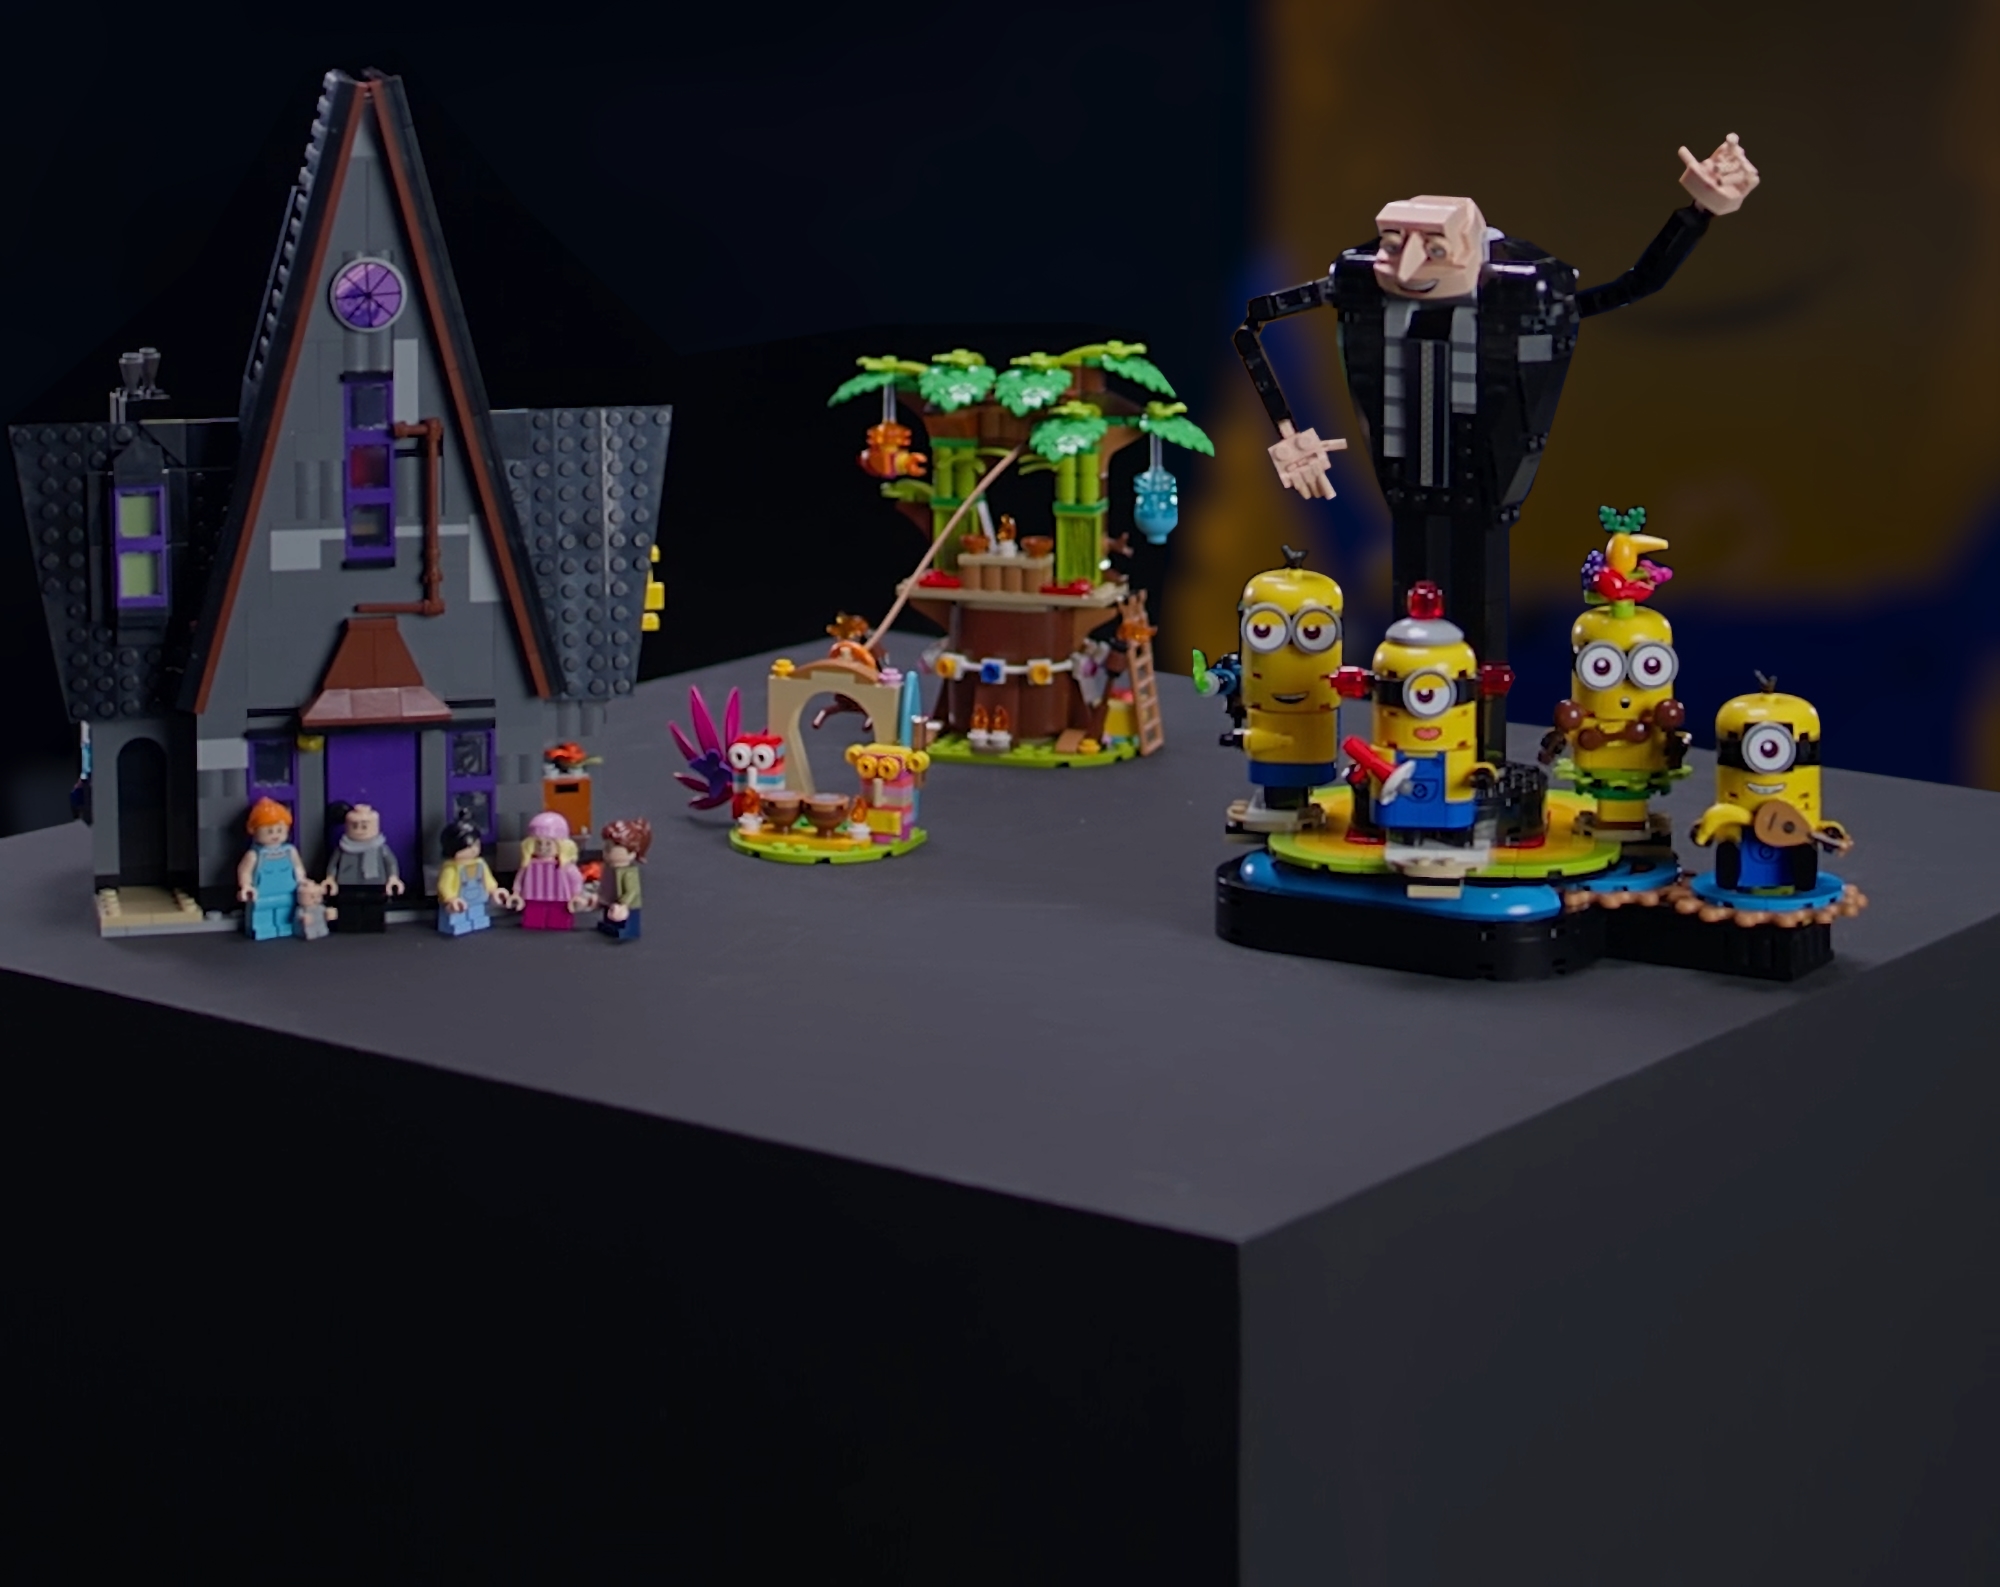 На честь виходу мультфільму Despicable Me 4: LEGO та Illumination представили набори конструкторів за ціною від $54.99